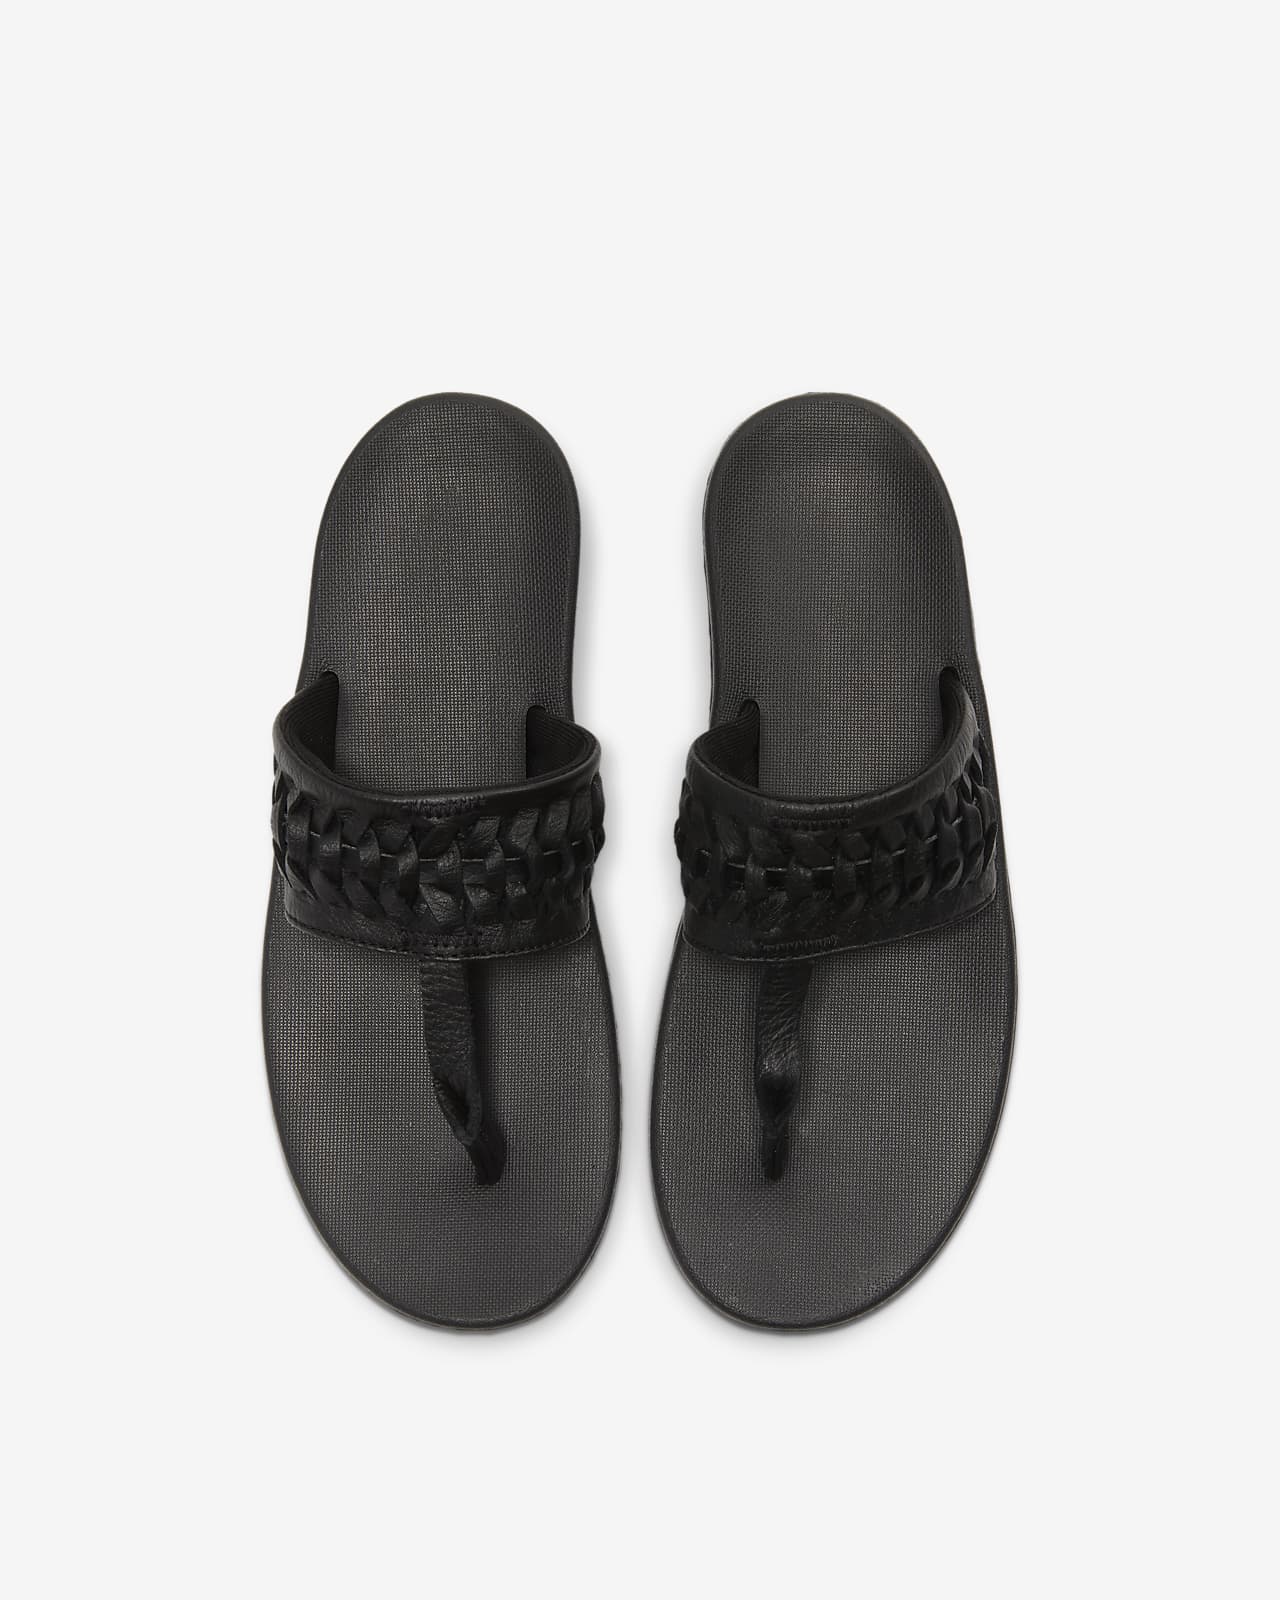 nike bella kai 2 women's sandals